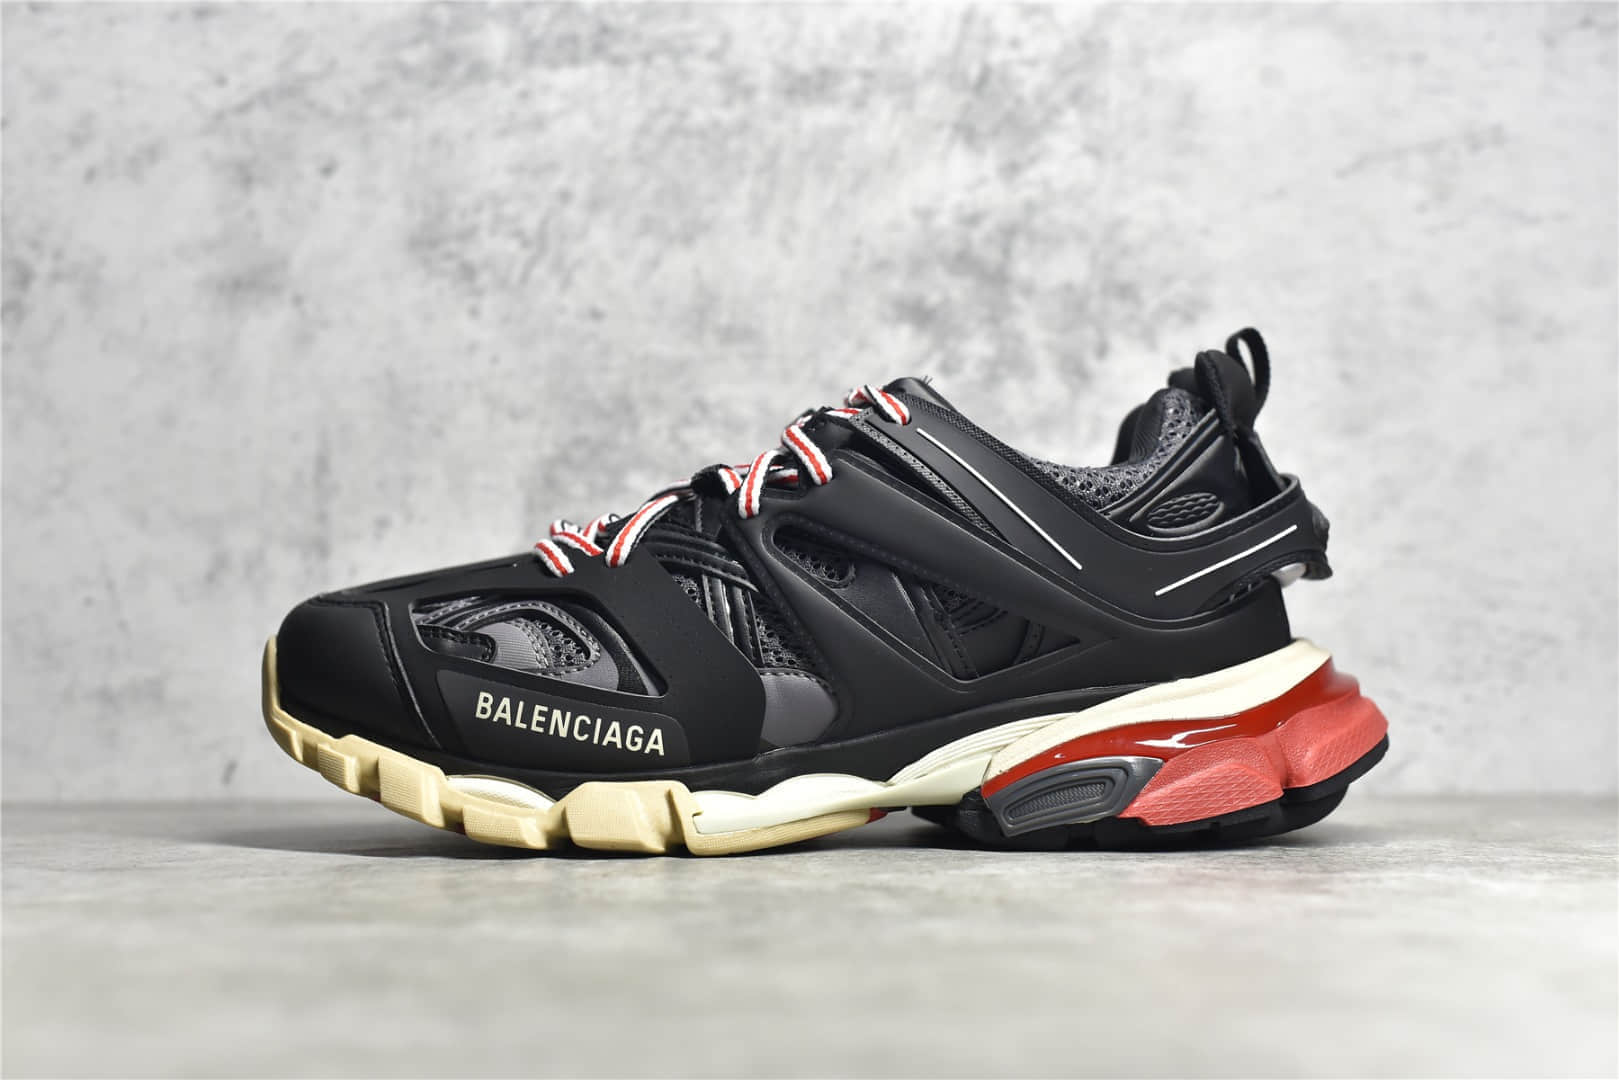 巴黎世家3.0三代黑红概念鞋 Balenciaga Sneaker Tess s.Gomma MAILLE 莆田巴黎世家货源-潮流者之家